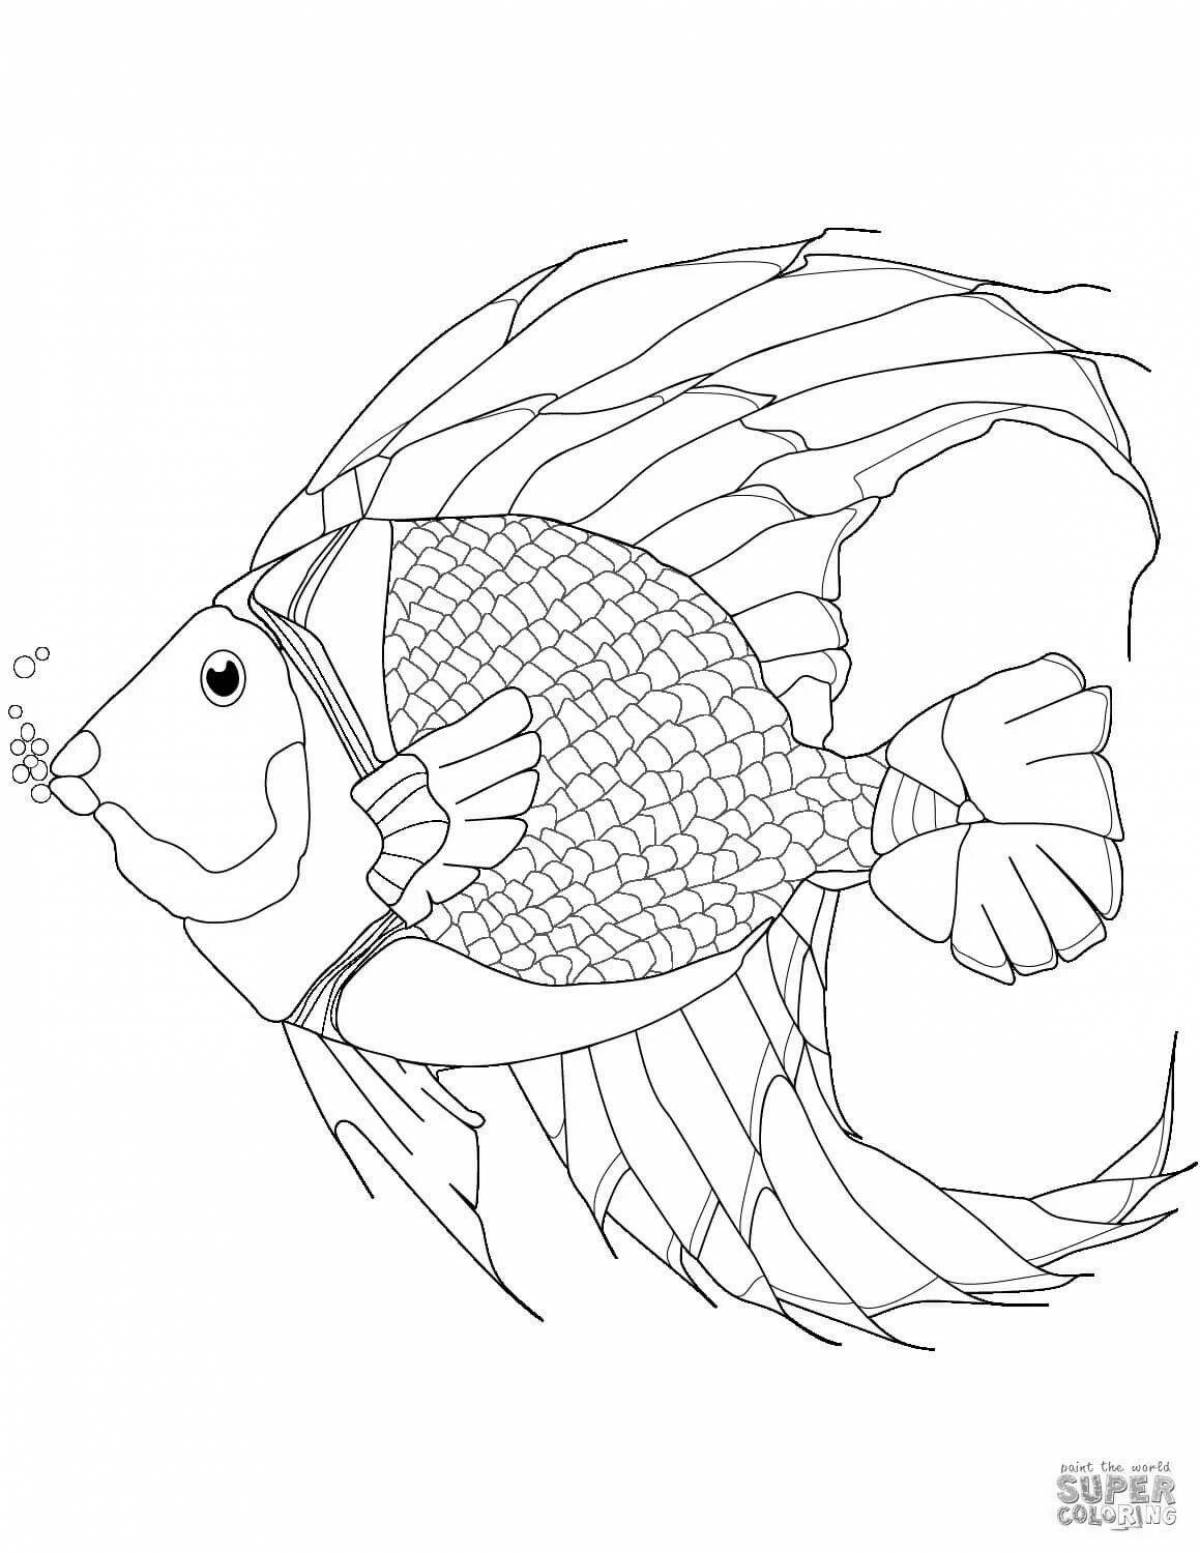 Привлекательная страница раскраски рыбы-попугая